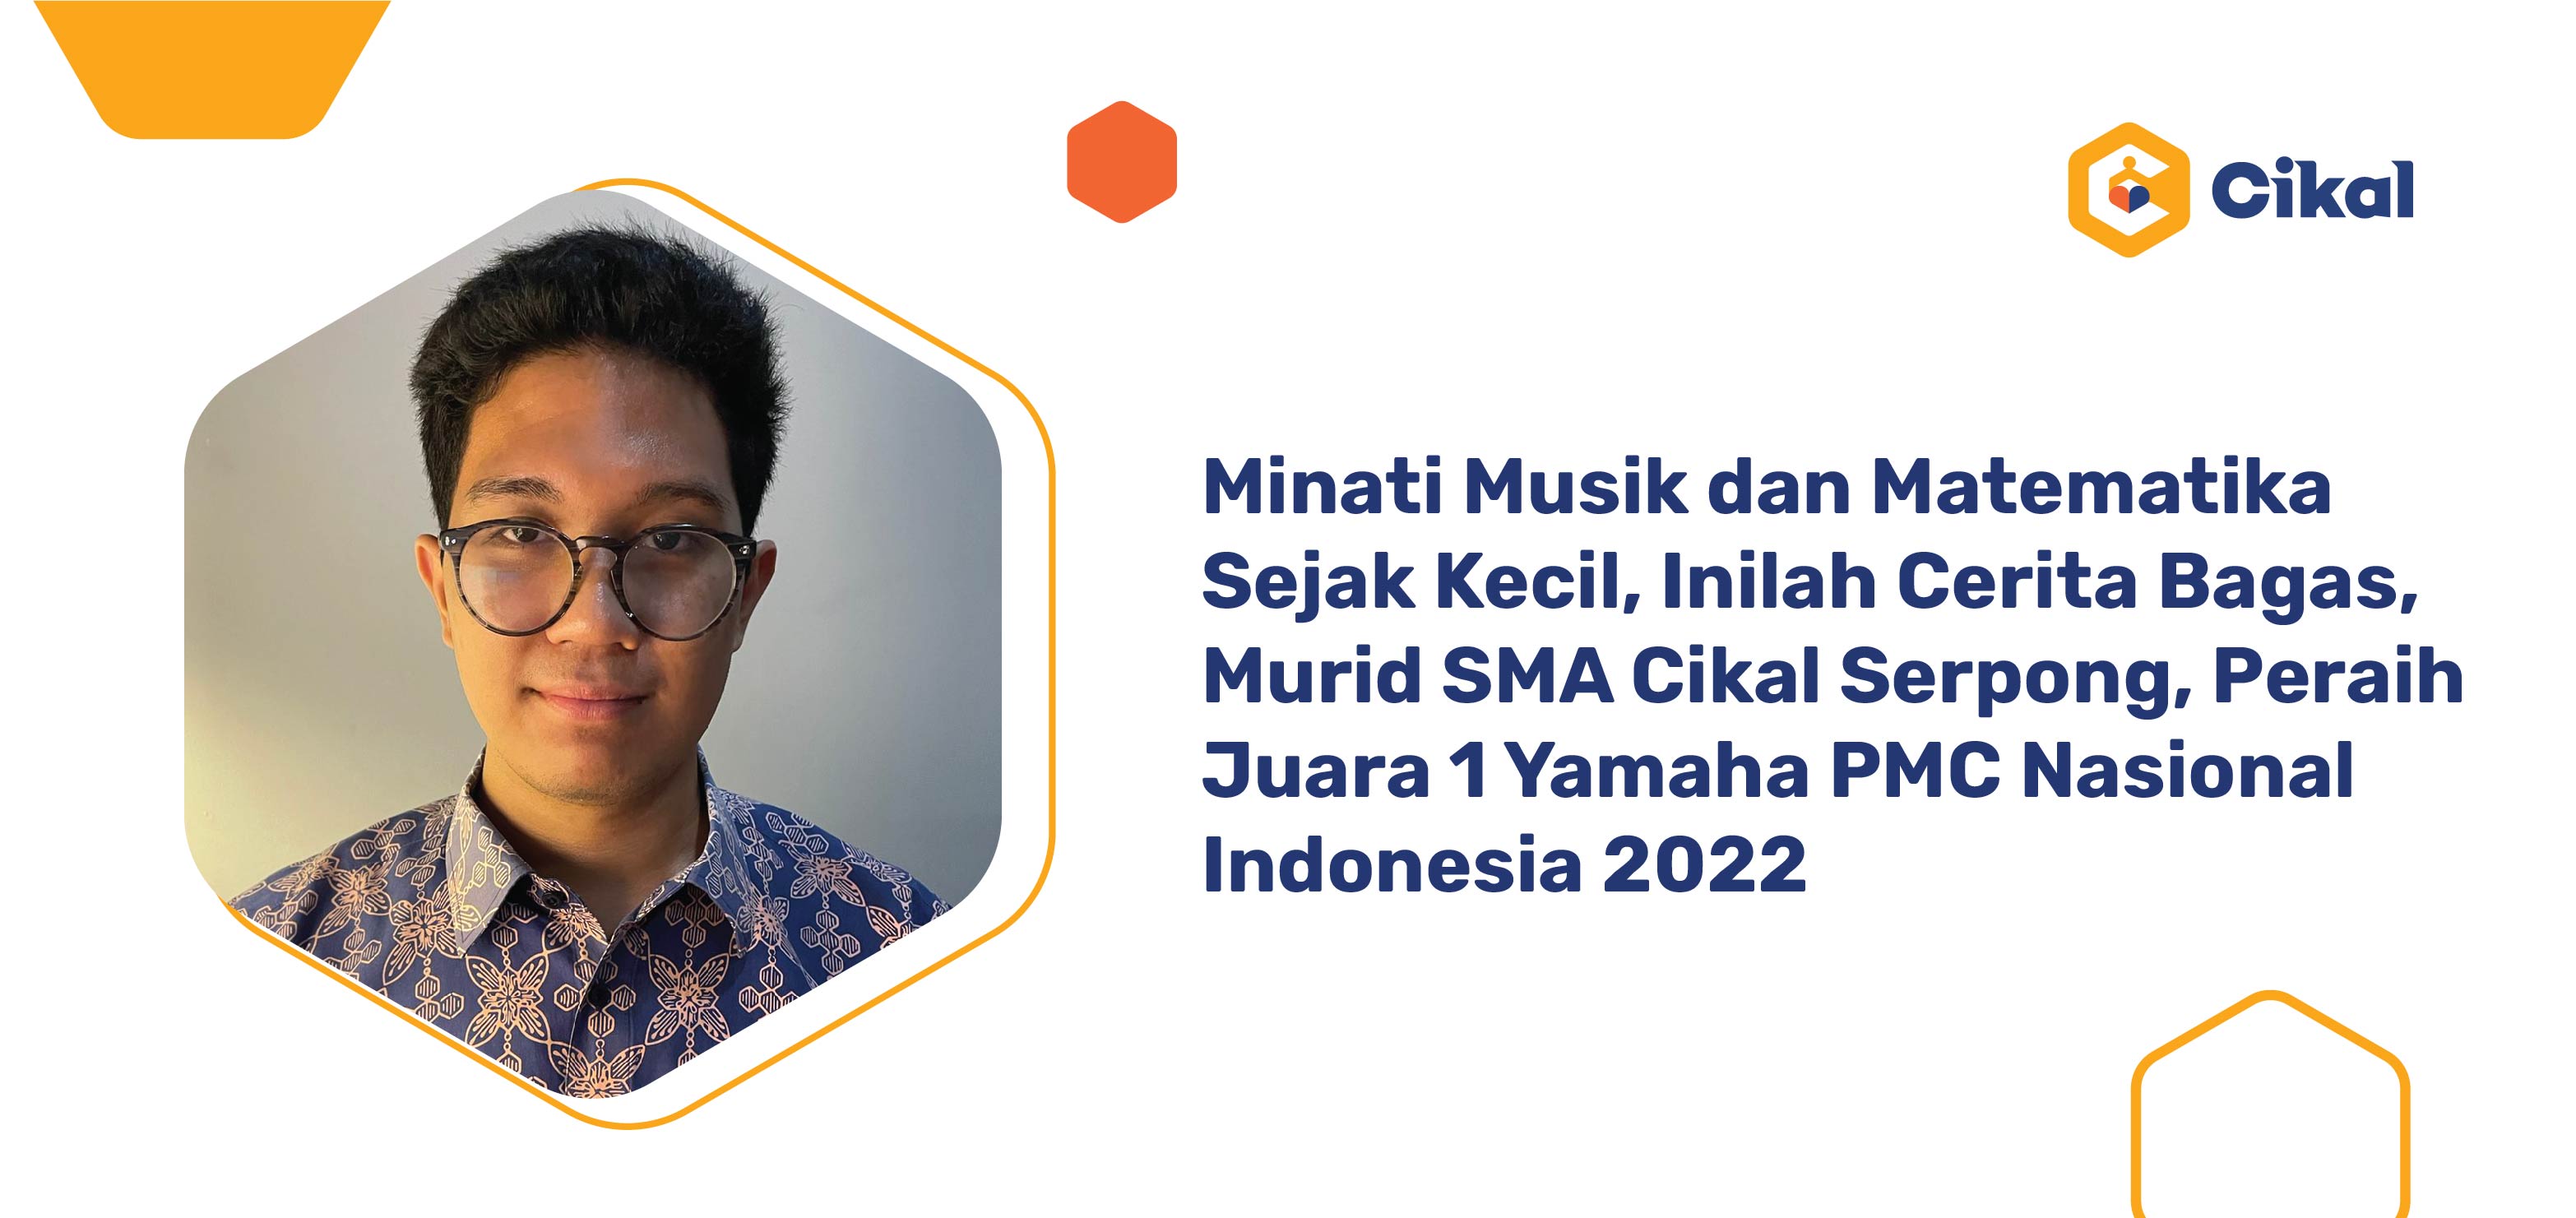 Minati Musik dan Matematika Sejak Kecil, Inilah Cerita Bagas, Murid SMA Cikal Serpong, Peraih Juara 1 Yamaha PMC Nasional Indonesia 2022  